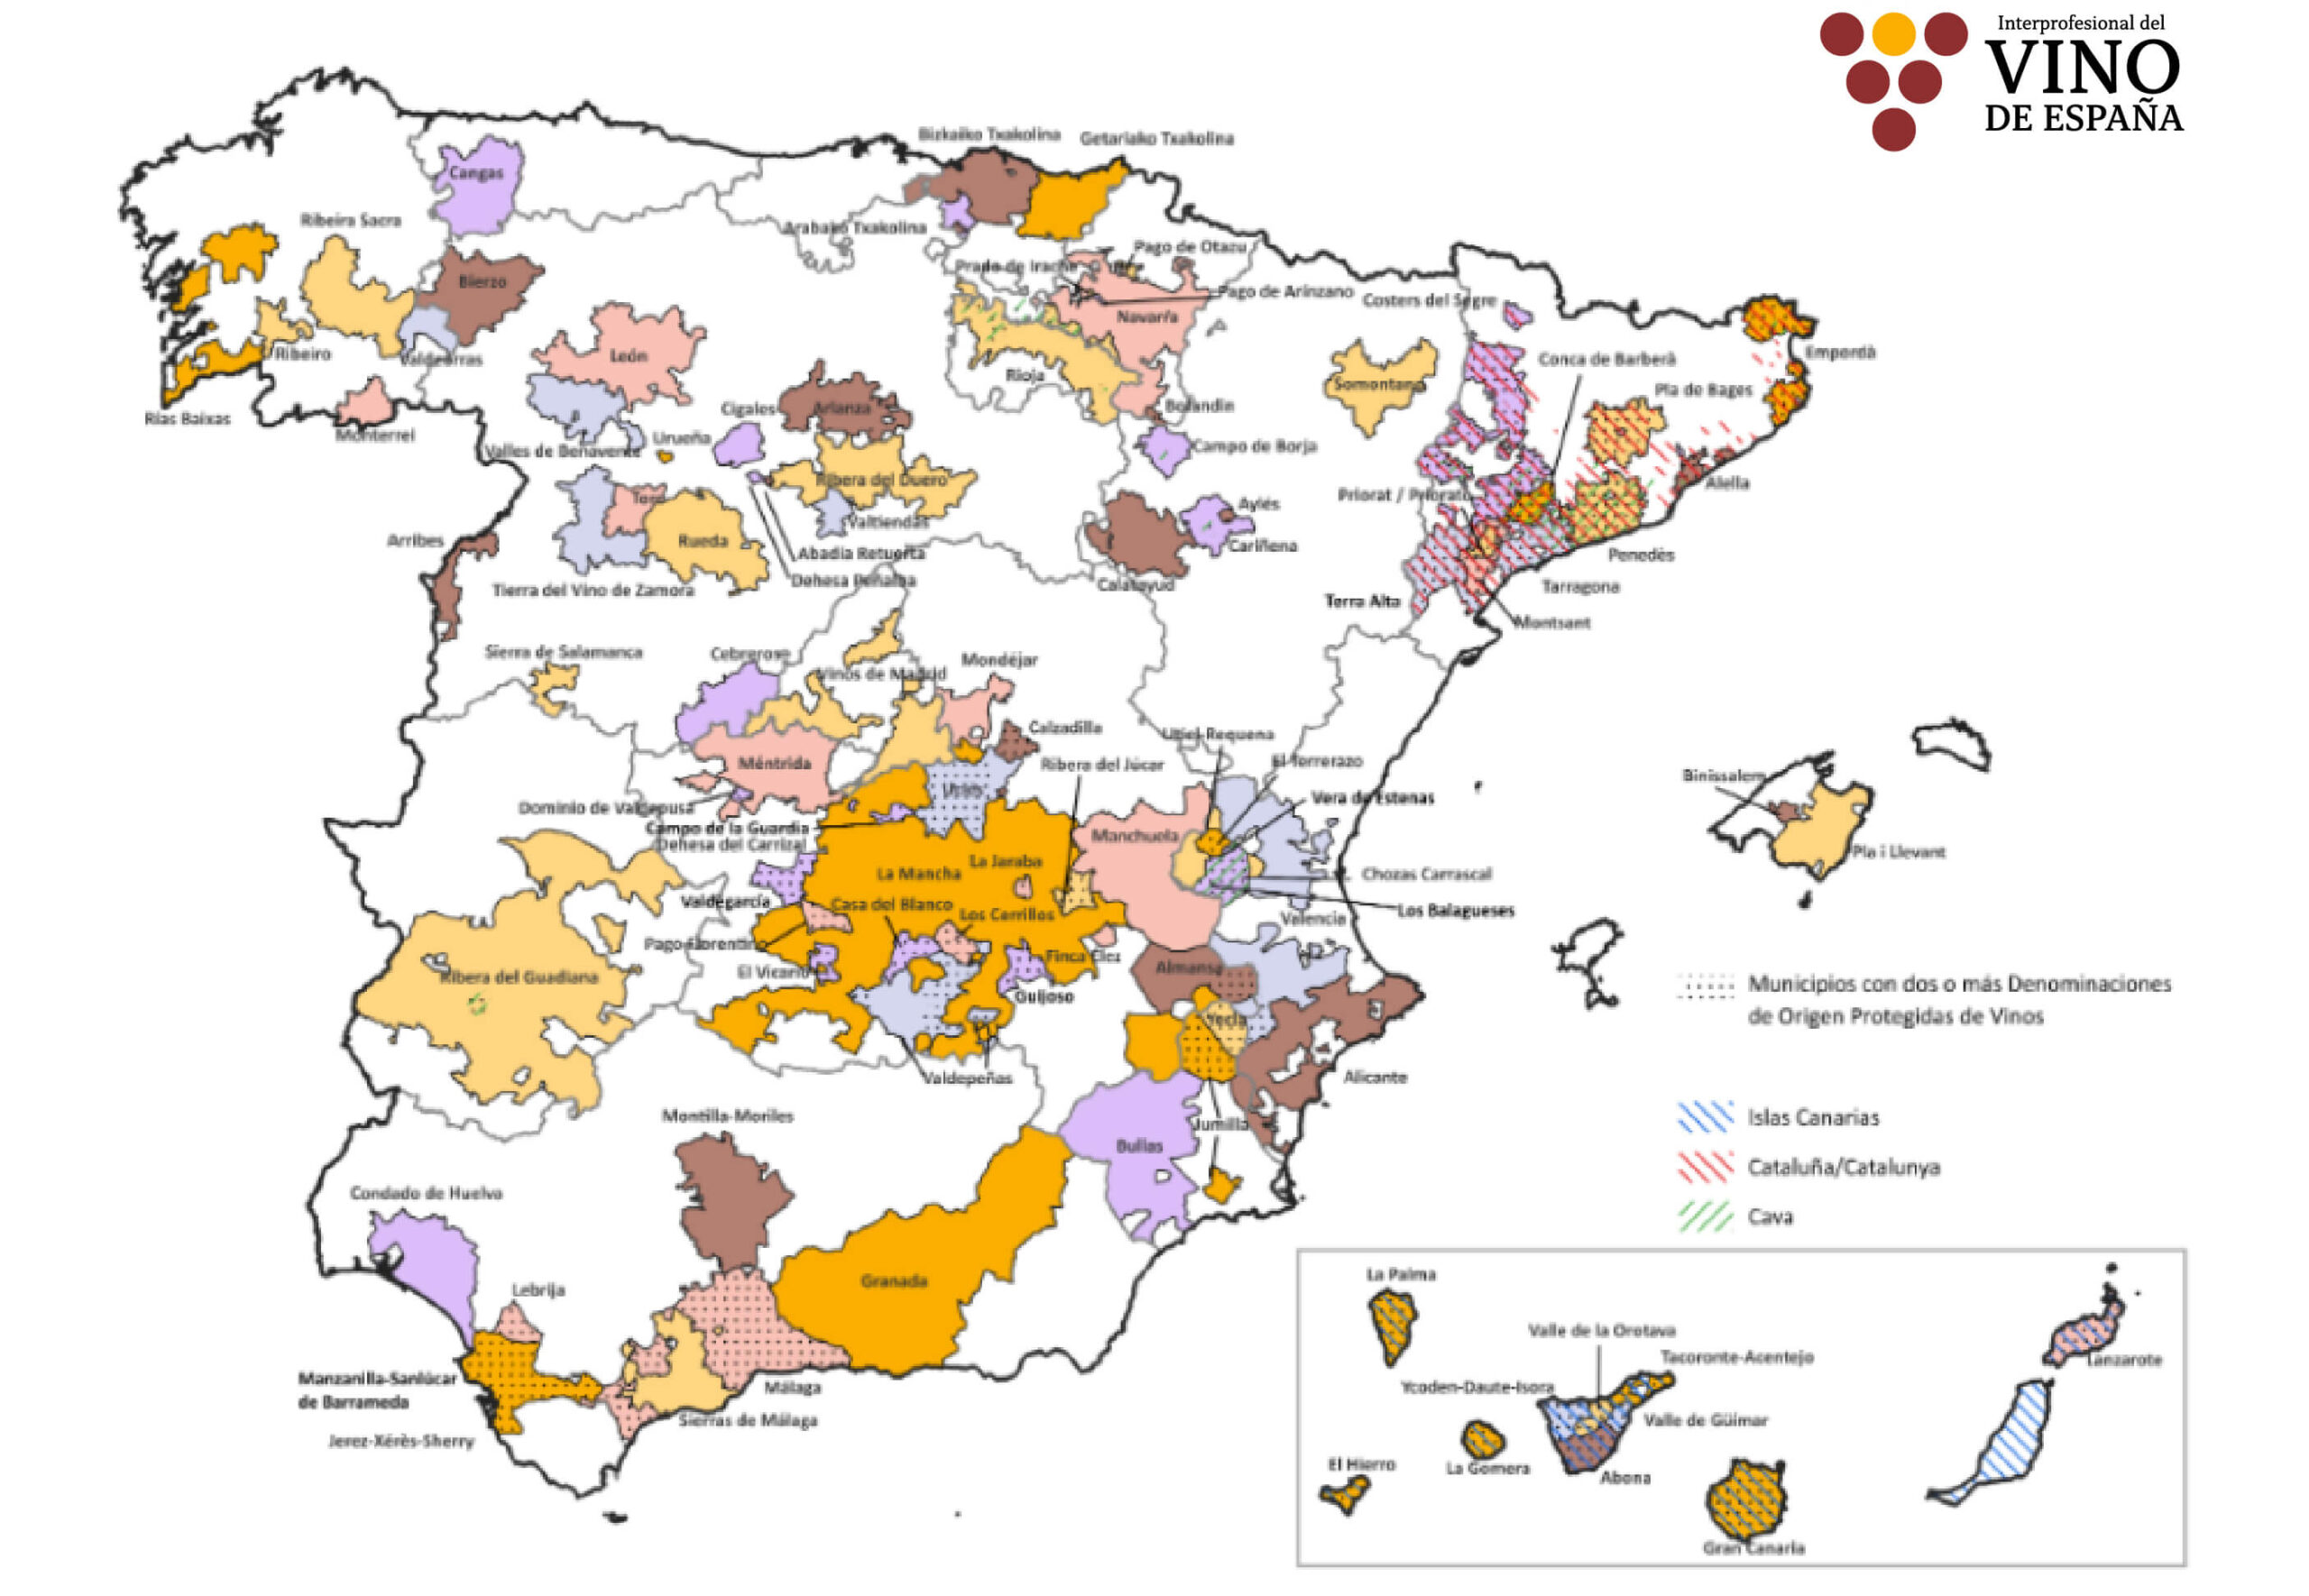 Impulso demográfico: los pueblos con viñedo mantienen cerca de un 53% más de población que los que carecen de él